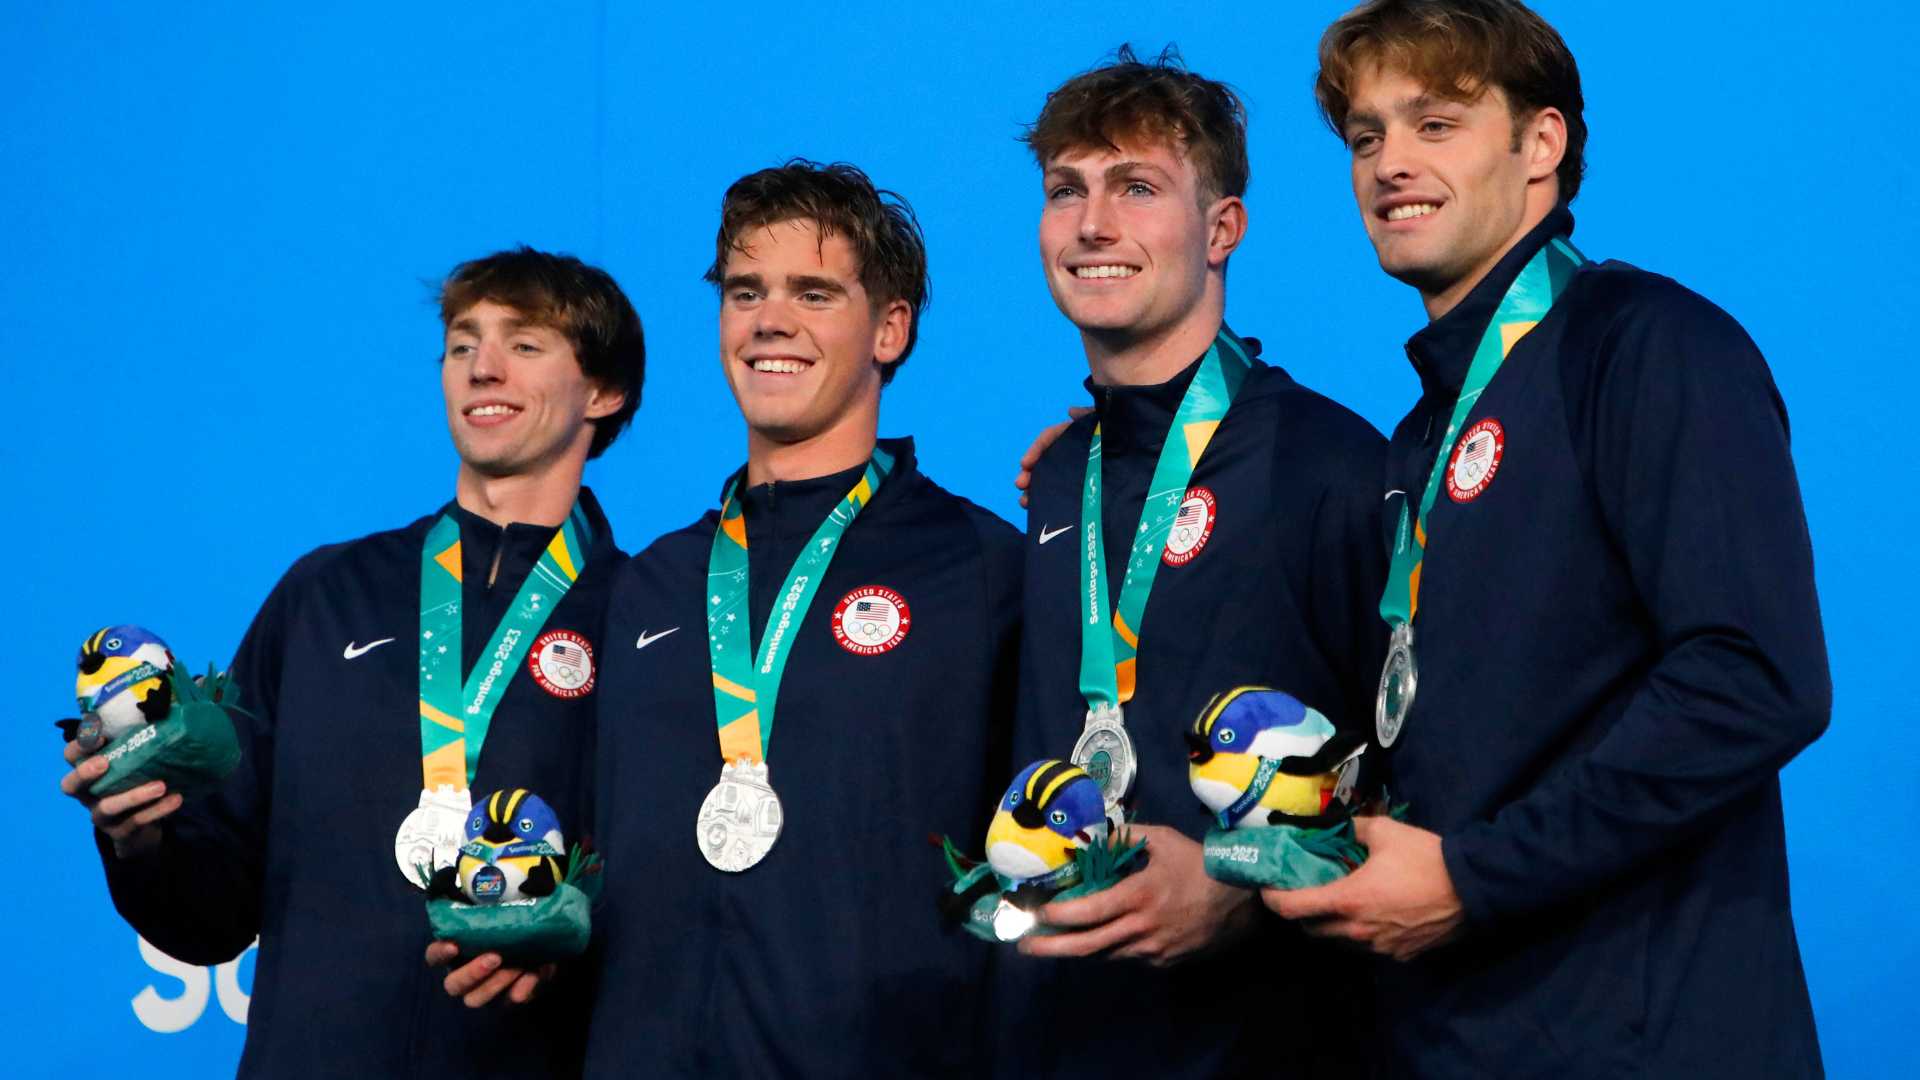 Resumen sábado 21 de octubre: Team USA brilló en natación y quedó al tope del medallero